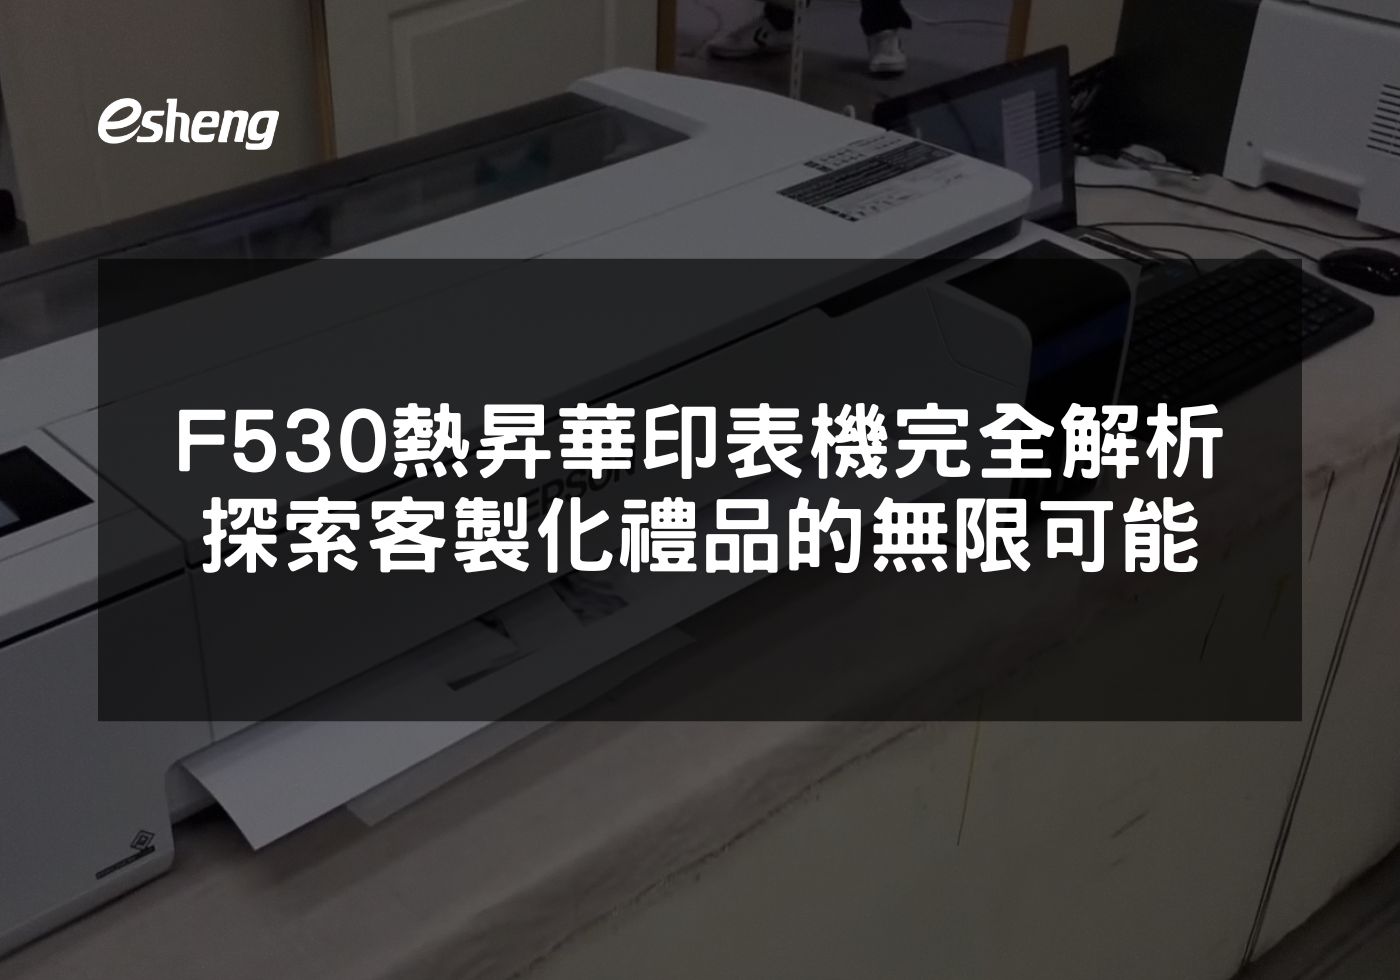 F530熱昇華印表機完全解析 探索客製化禮品的無限可能